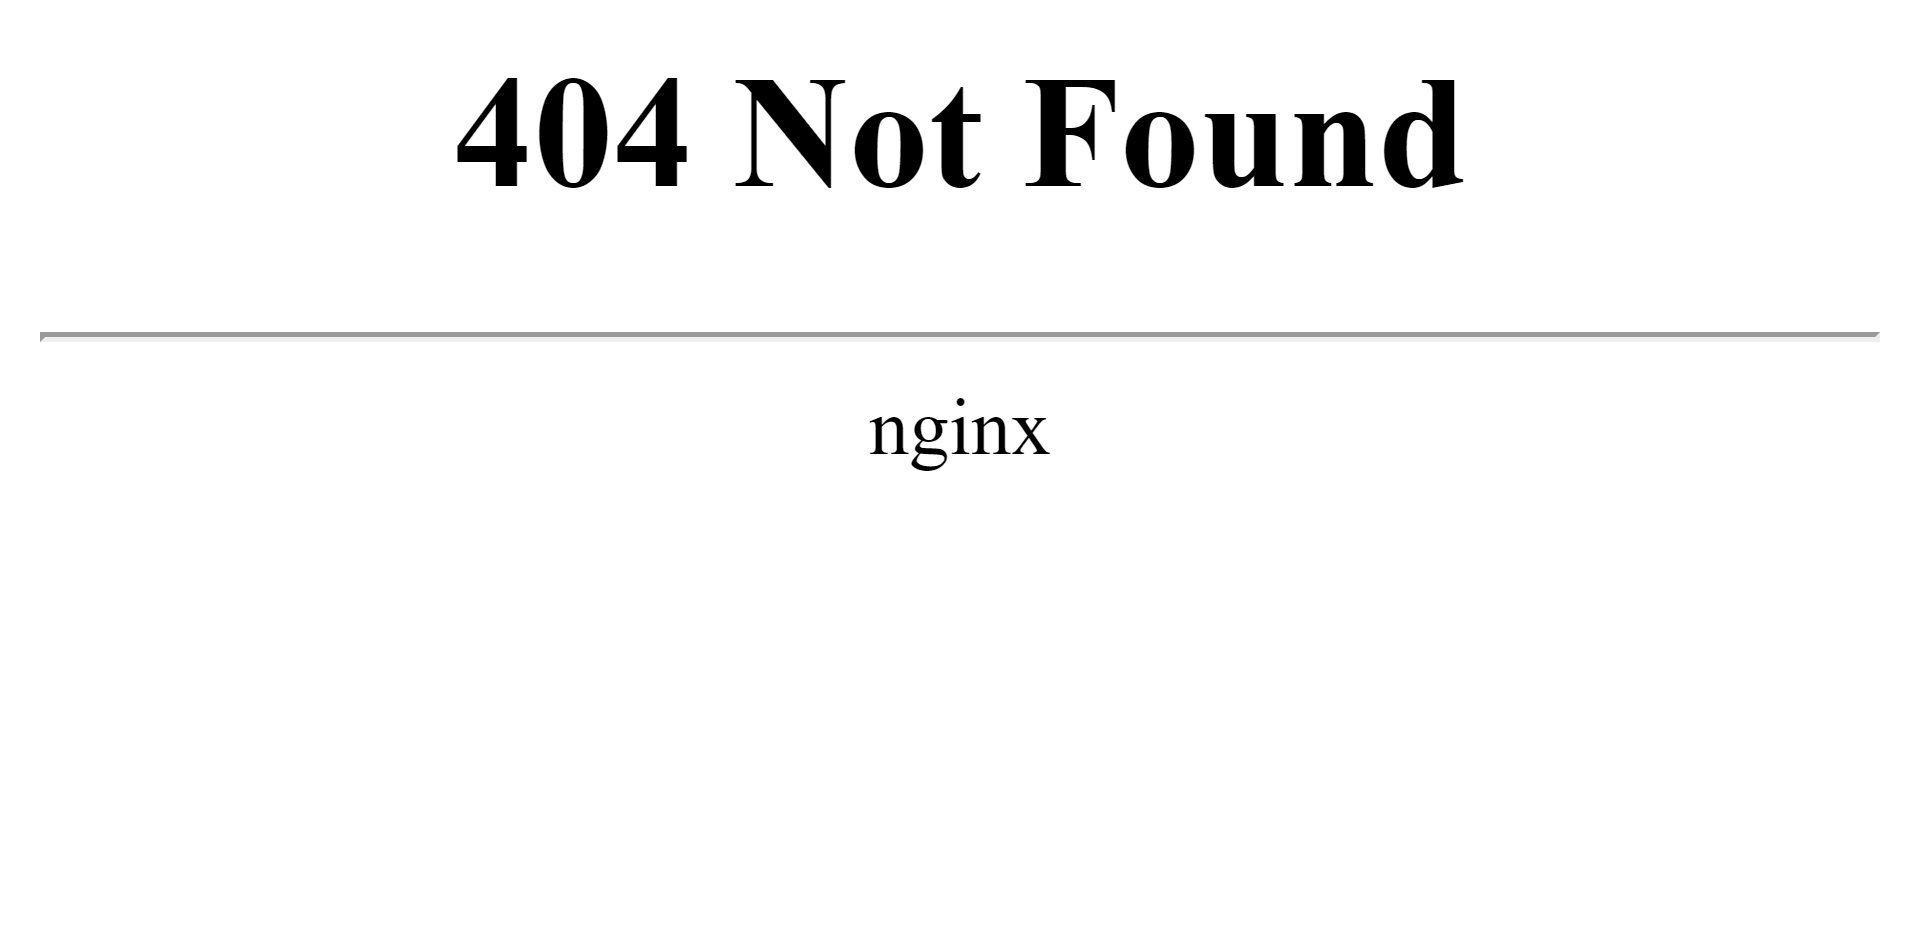 Return 404. 404 Not found nginx. 404 Not found nginx/1.22.1. Request_uri nginx. Htaccess 404.